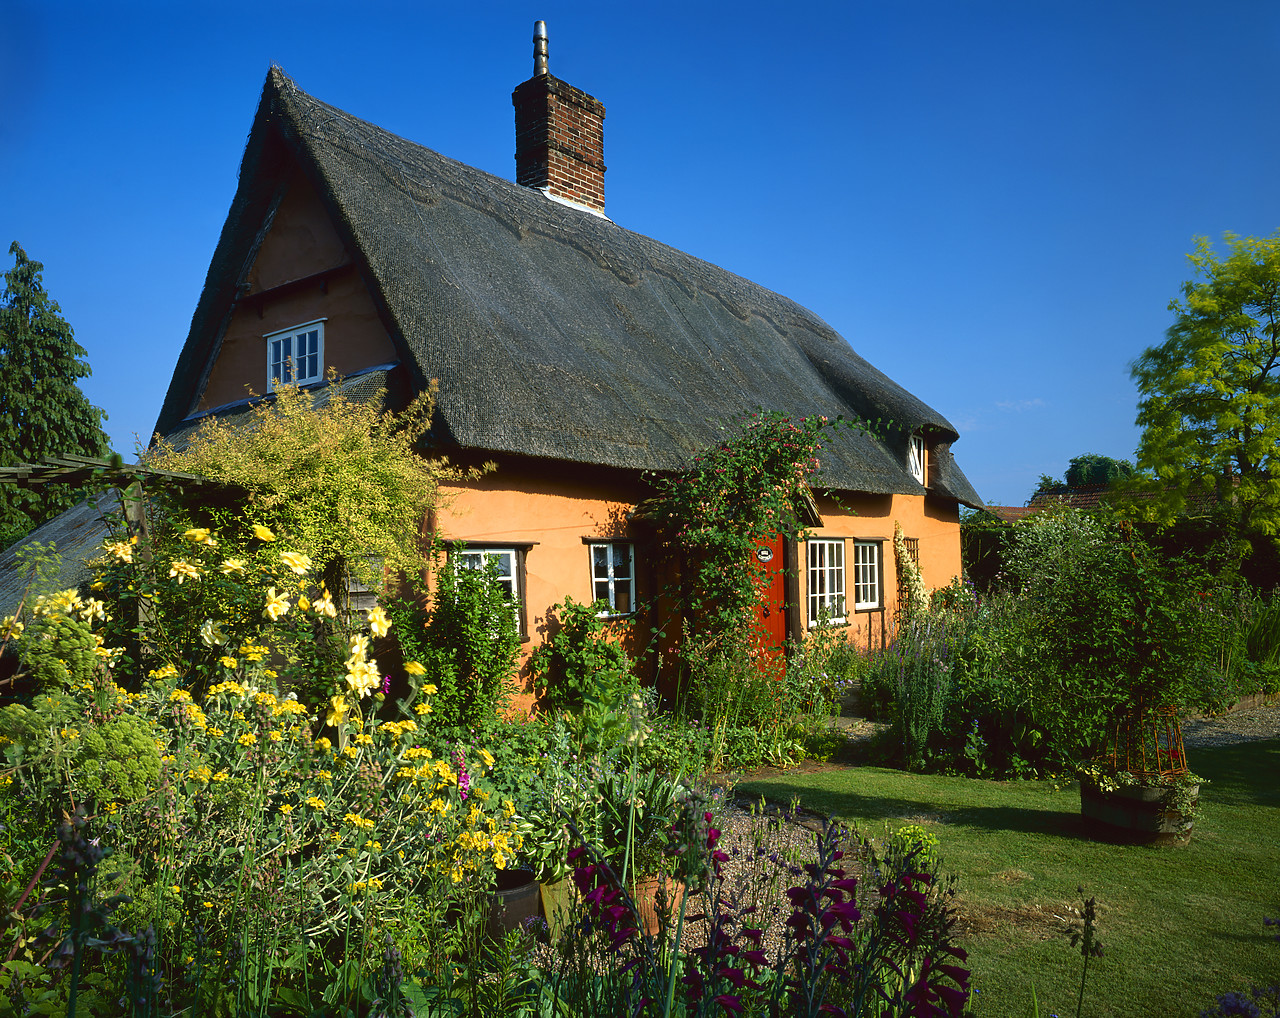 #040143-2 - Thatched Cottage & Garden, Suffolk, England